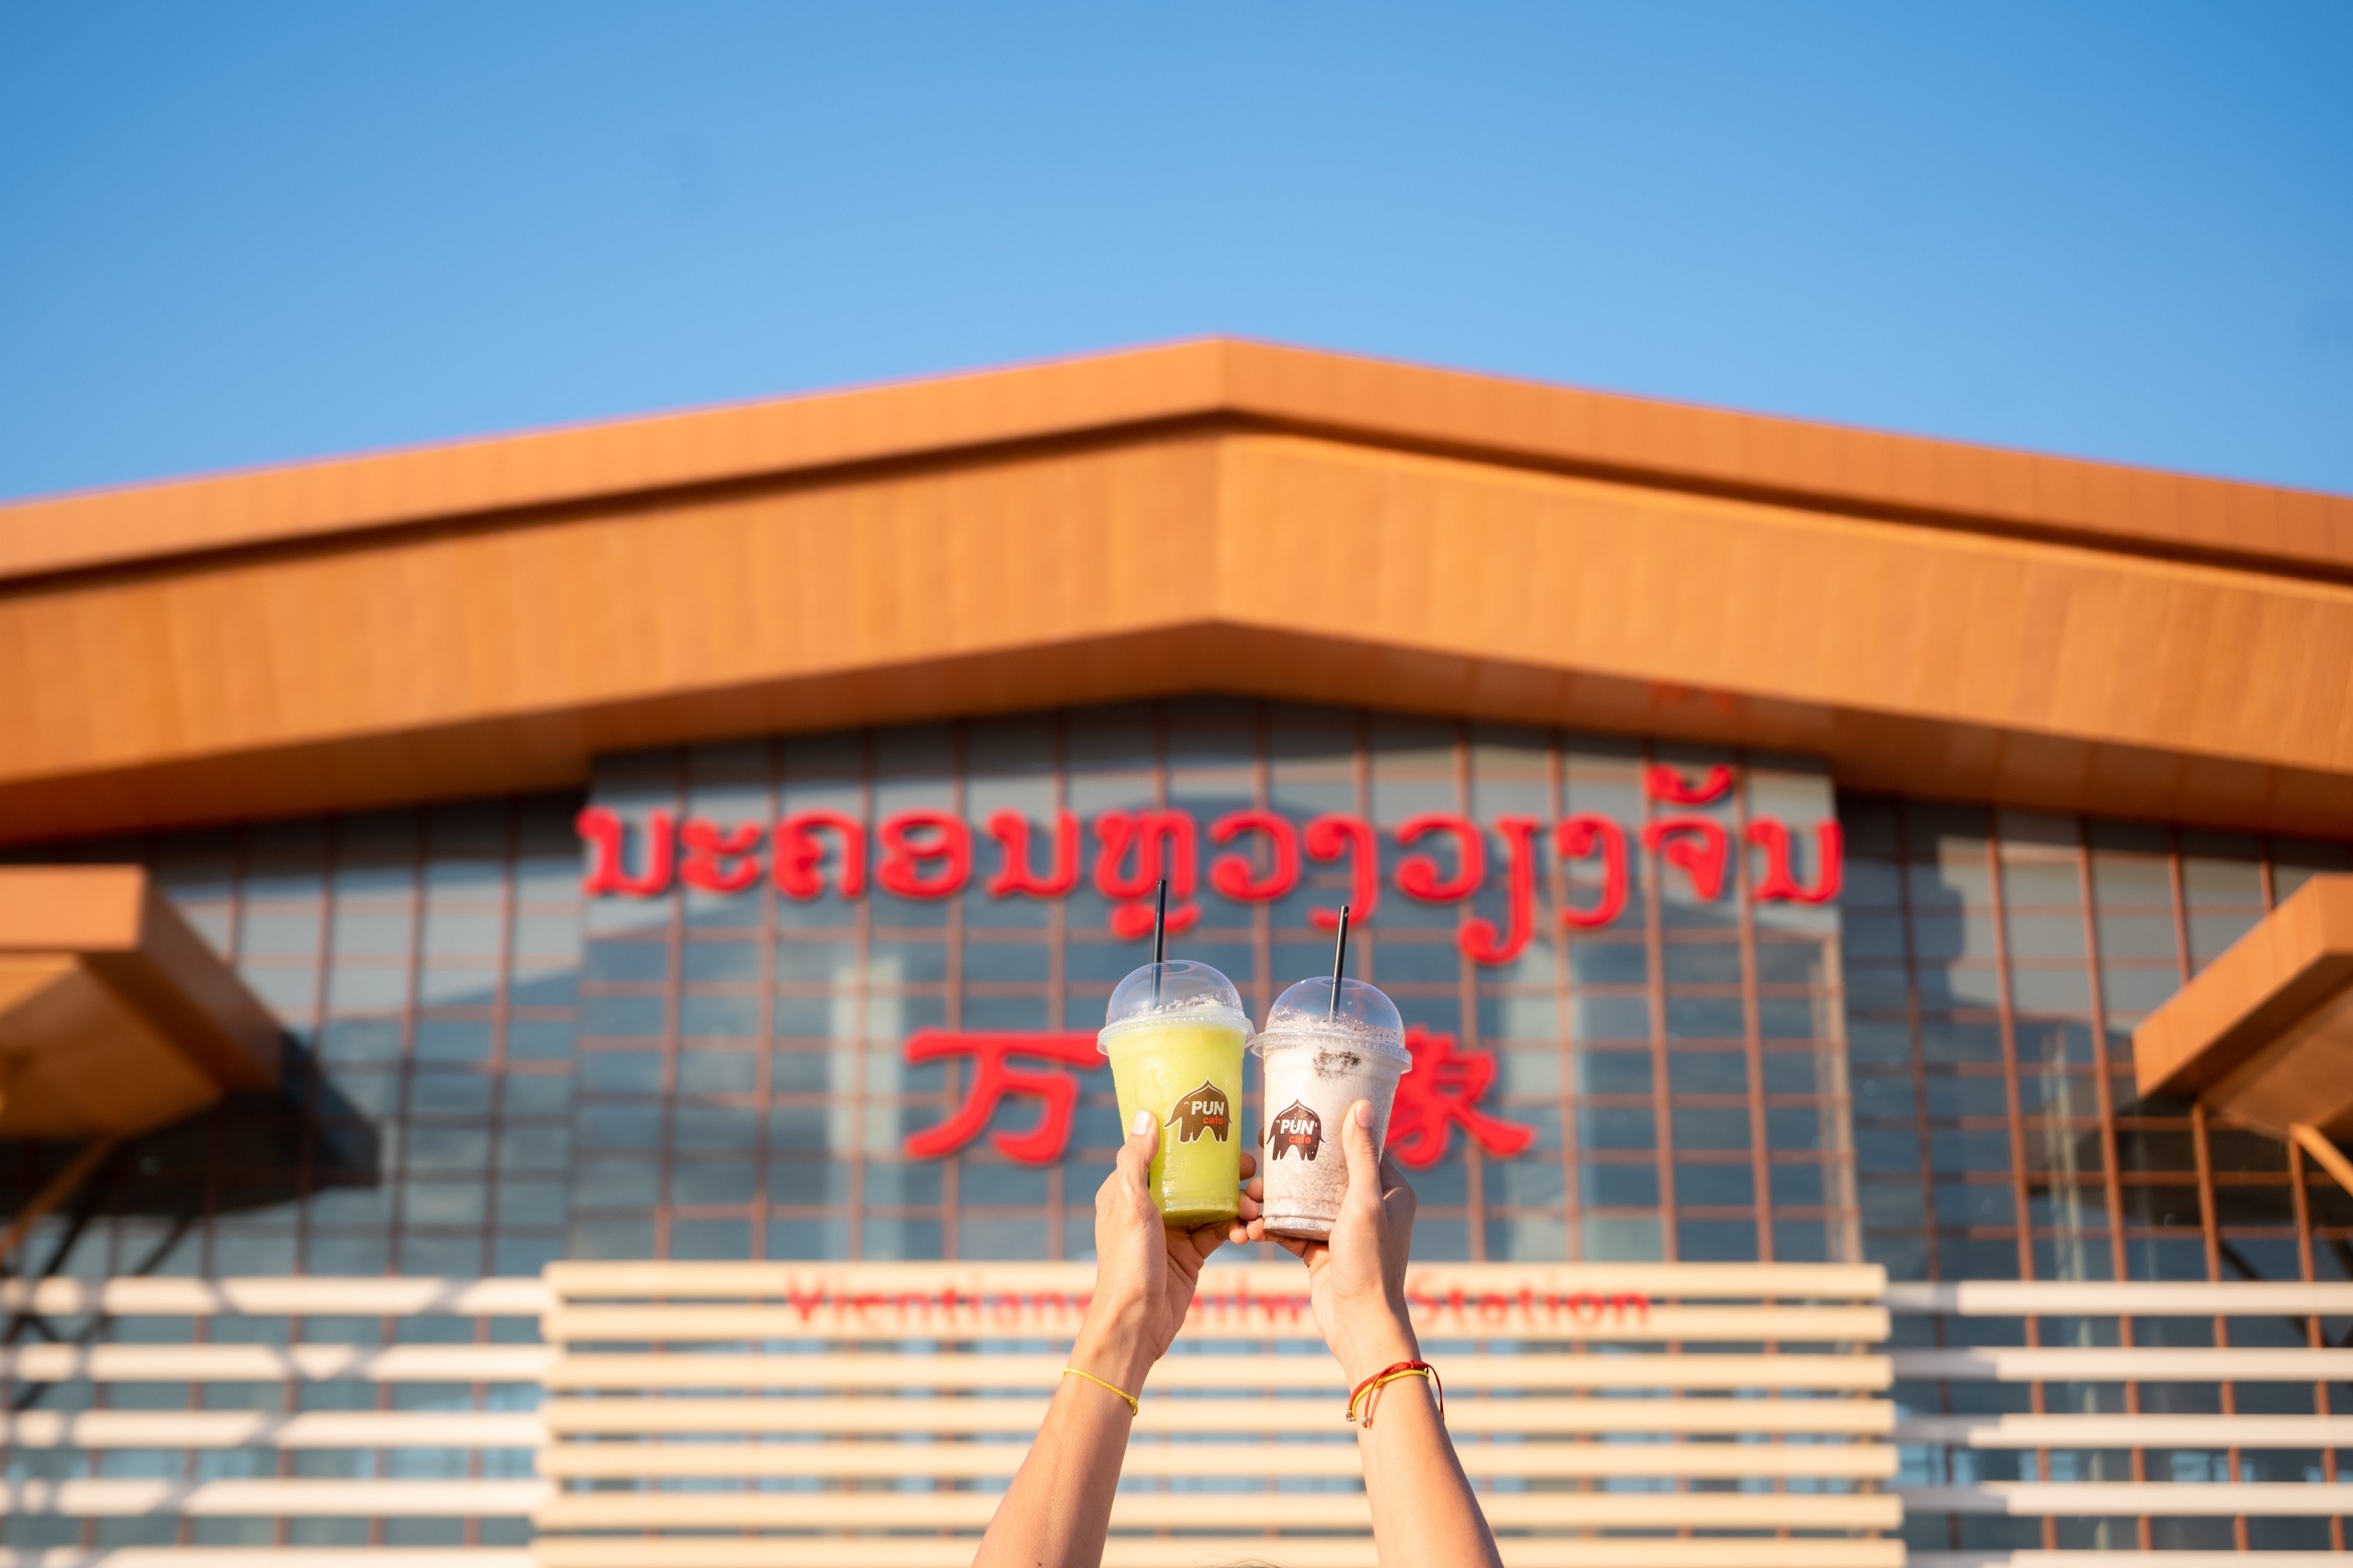 กาแฟพันธุ์ไทย รุก clmv สยายปีกบุกตลาดอาเซียน เปิดตัว “ปันคาเฟ่” แห่งแรกใน สปป.ลาว